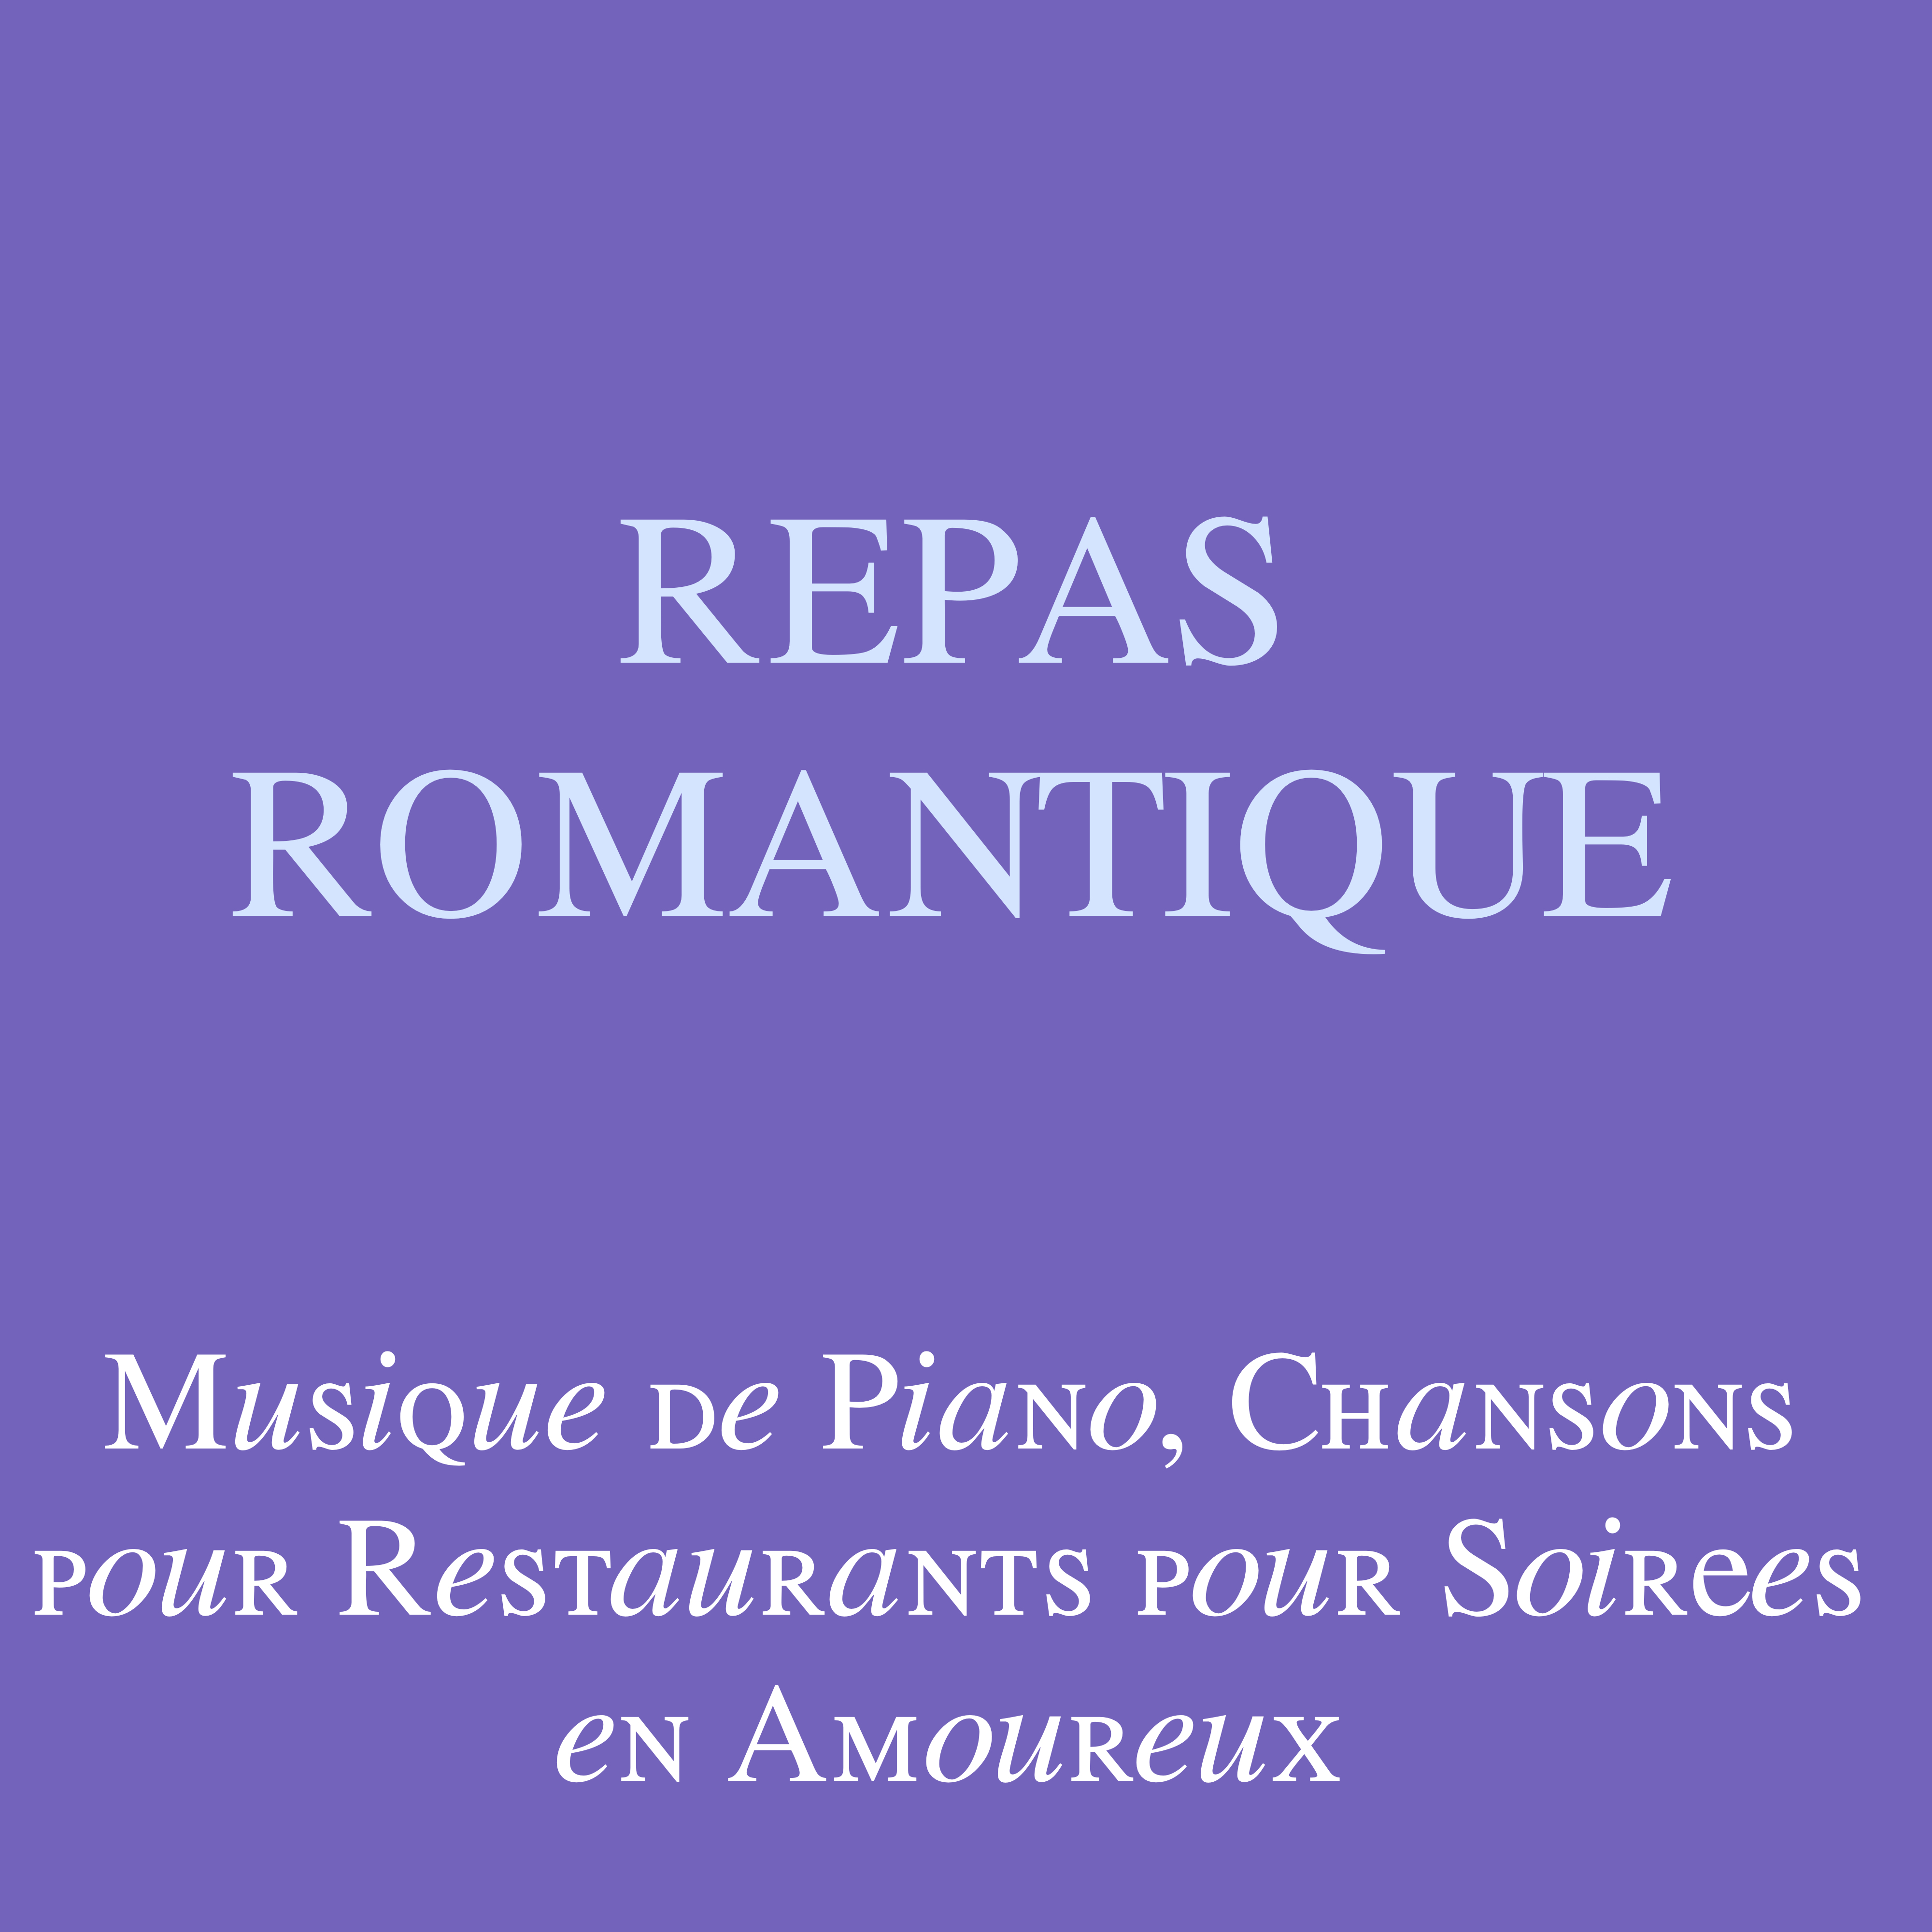 Repas Romantique: Musique de Piano, Chansons pour Restaurants pour Soirées en Amoureux